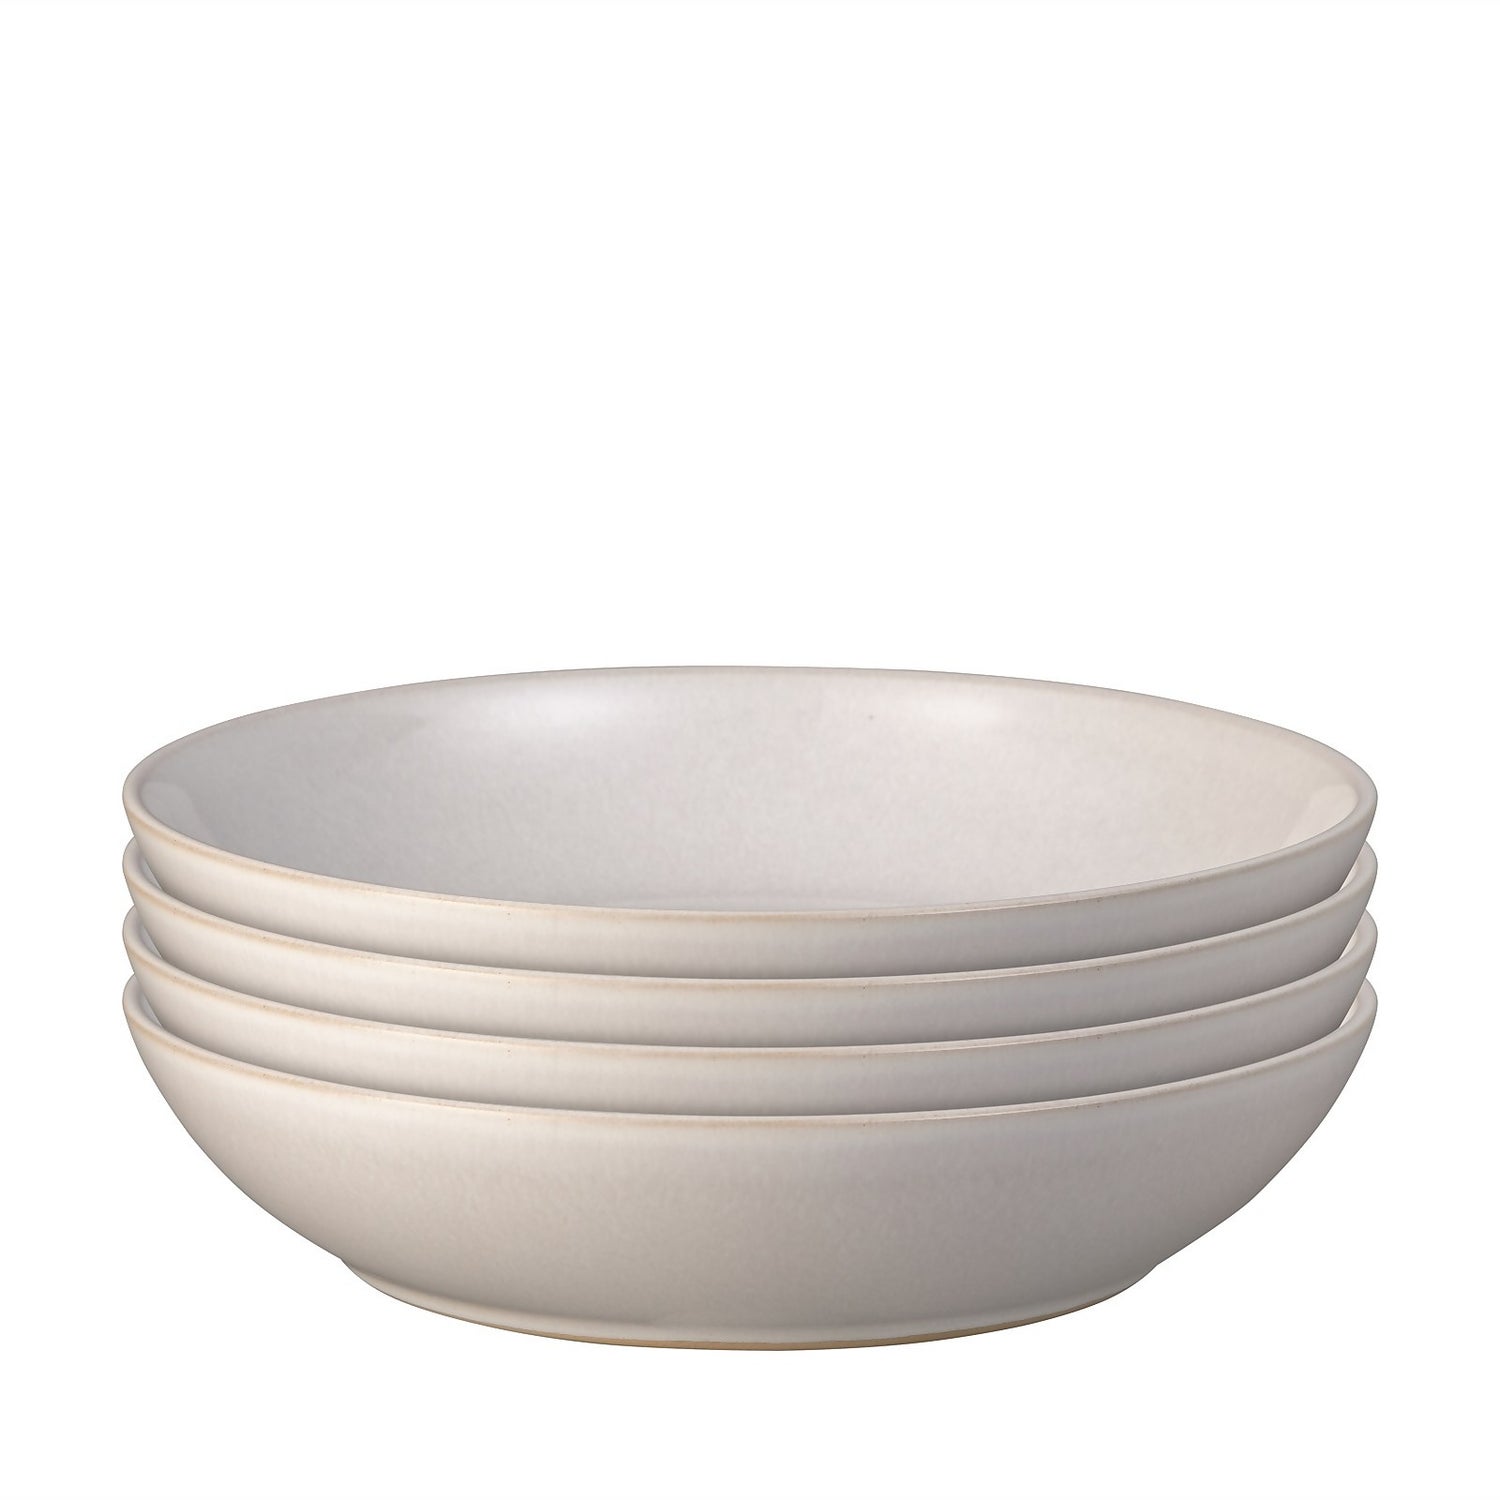 Intro Pasta Bowls - Stone White - 4 Piece Set